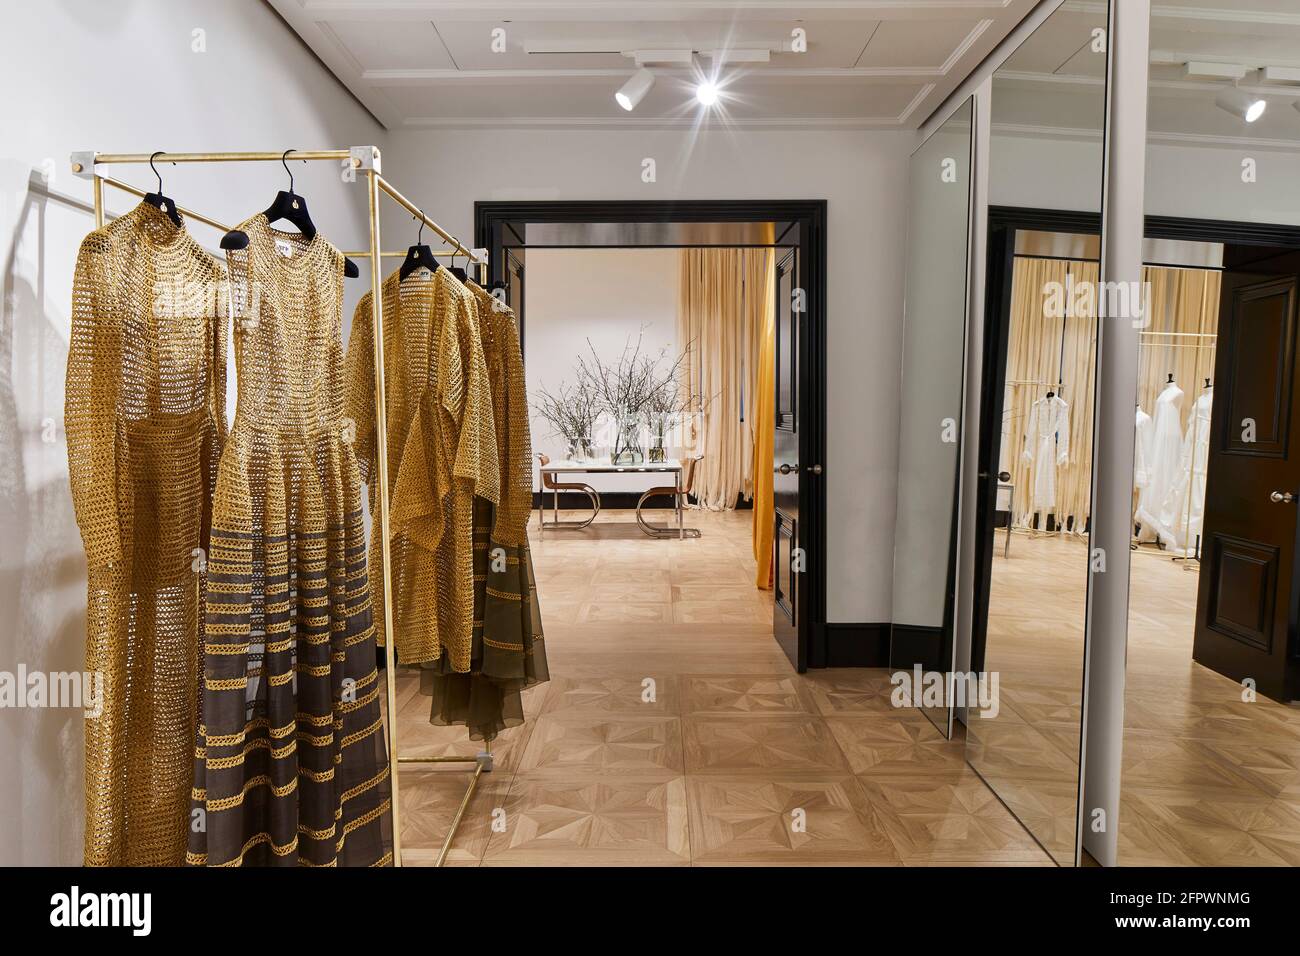 Intérieur du magasin. Maison Rabih Kayrouz Boutique, Londres, Royaume-Uni. Architecte: n/a, 2020. Banque D'Images